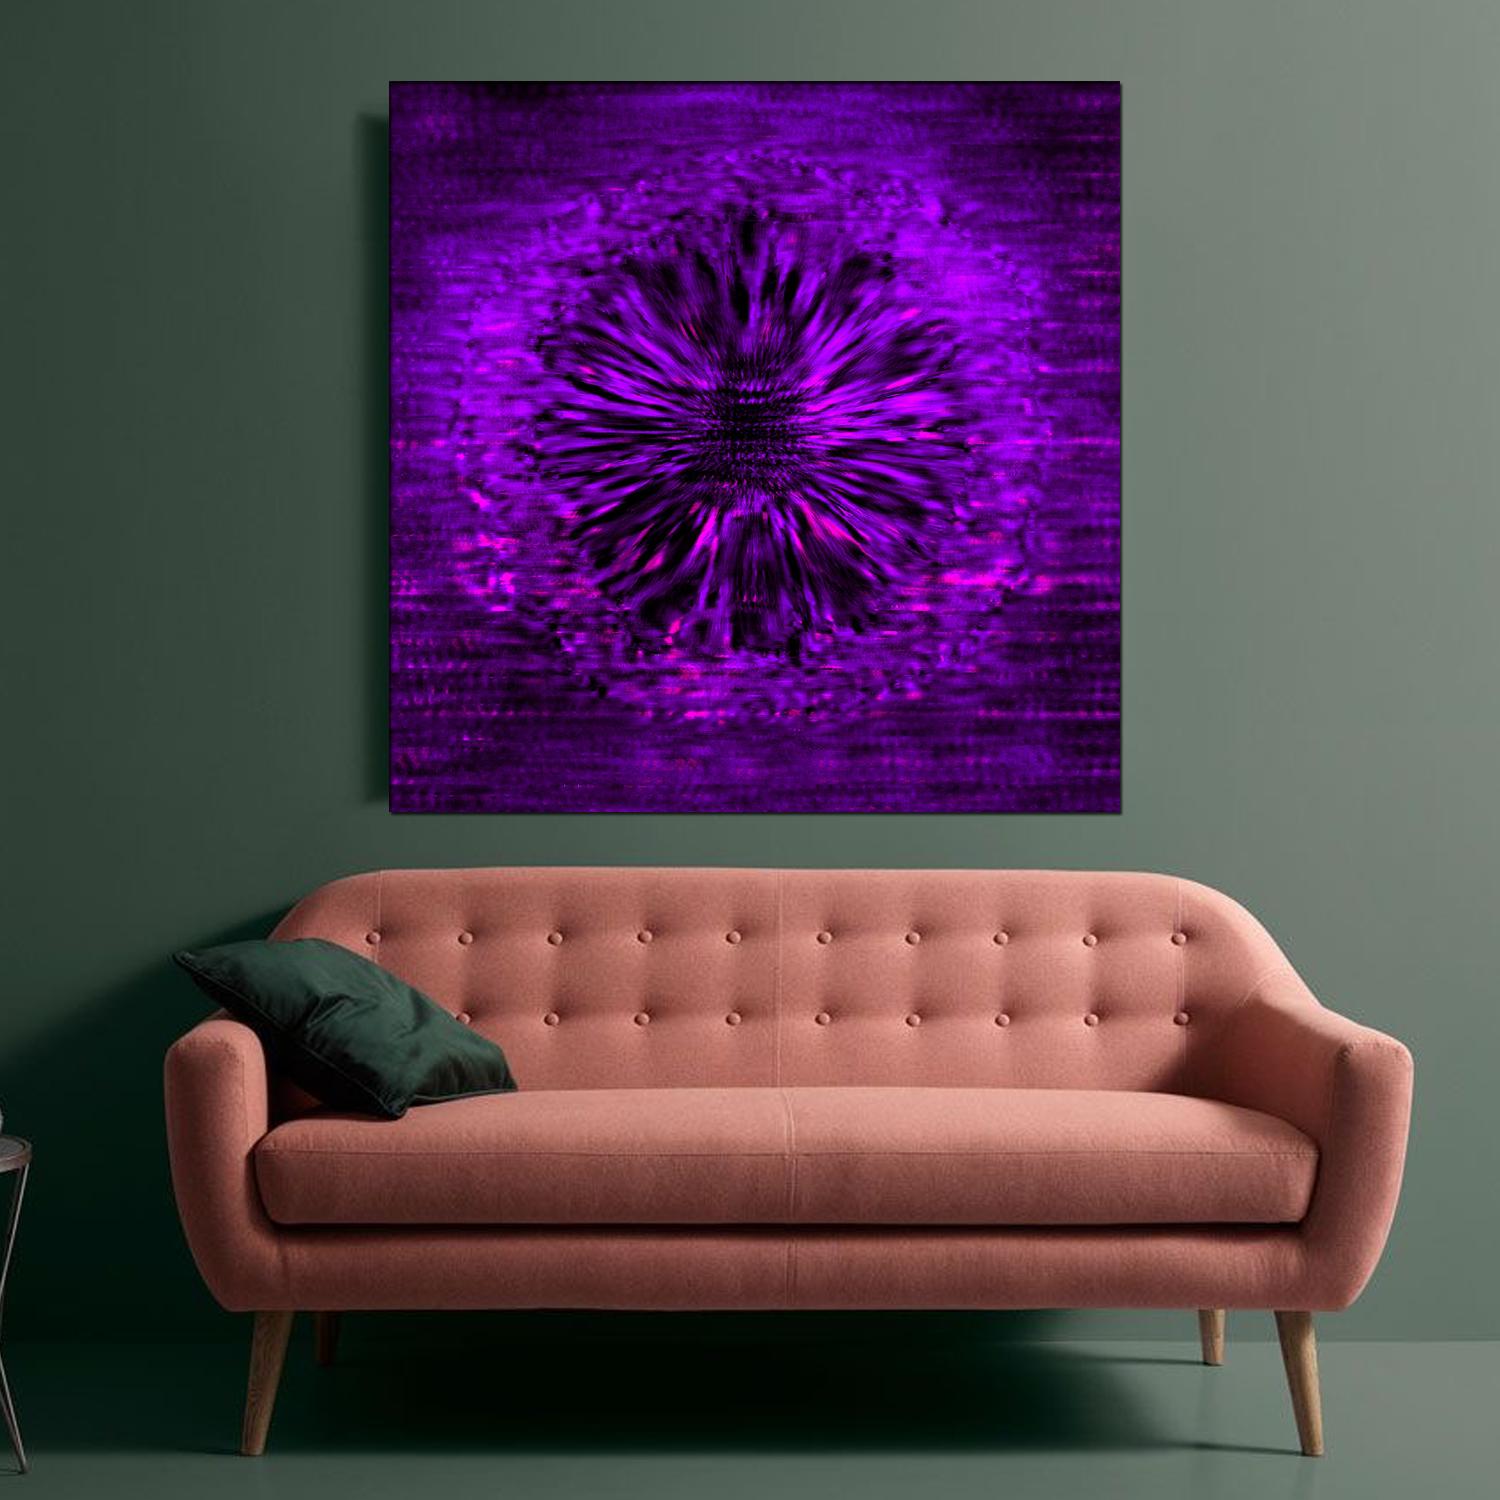 Noise n°09 (noir, violet, 3D, lenticulaire, nouveaux médias, cercle, Galaxy, espace) - Violet Abstract Painting par Sungyong Hong